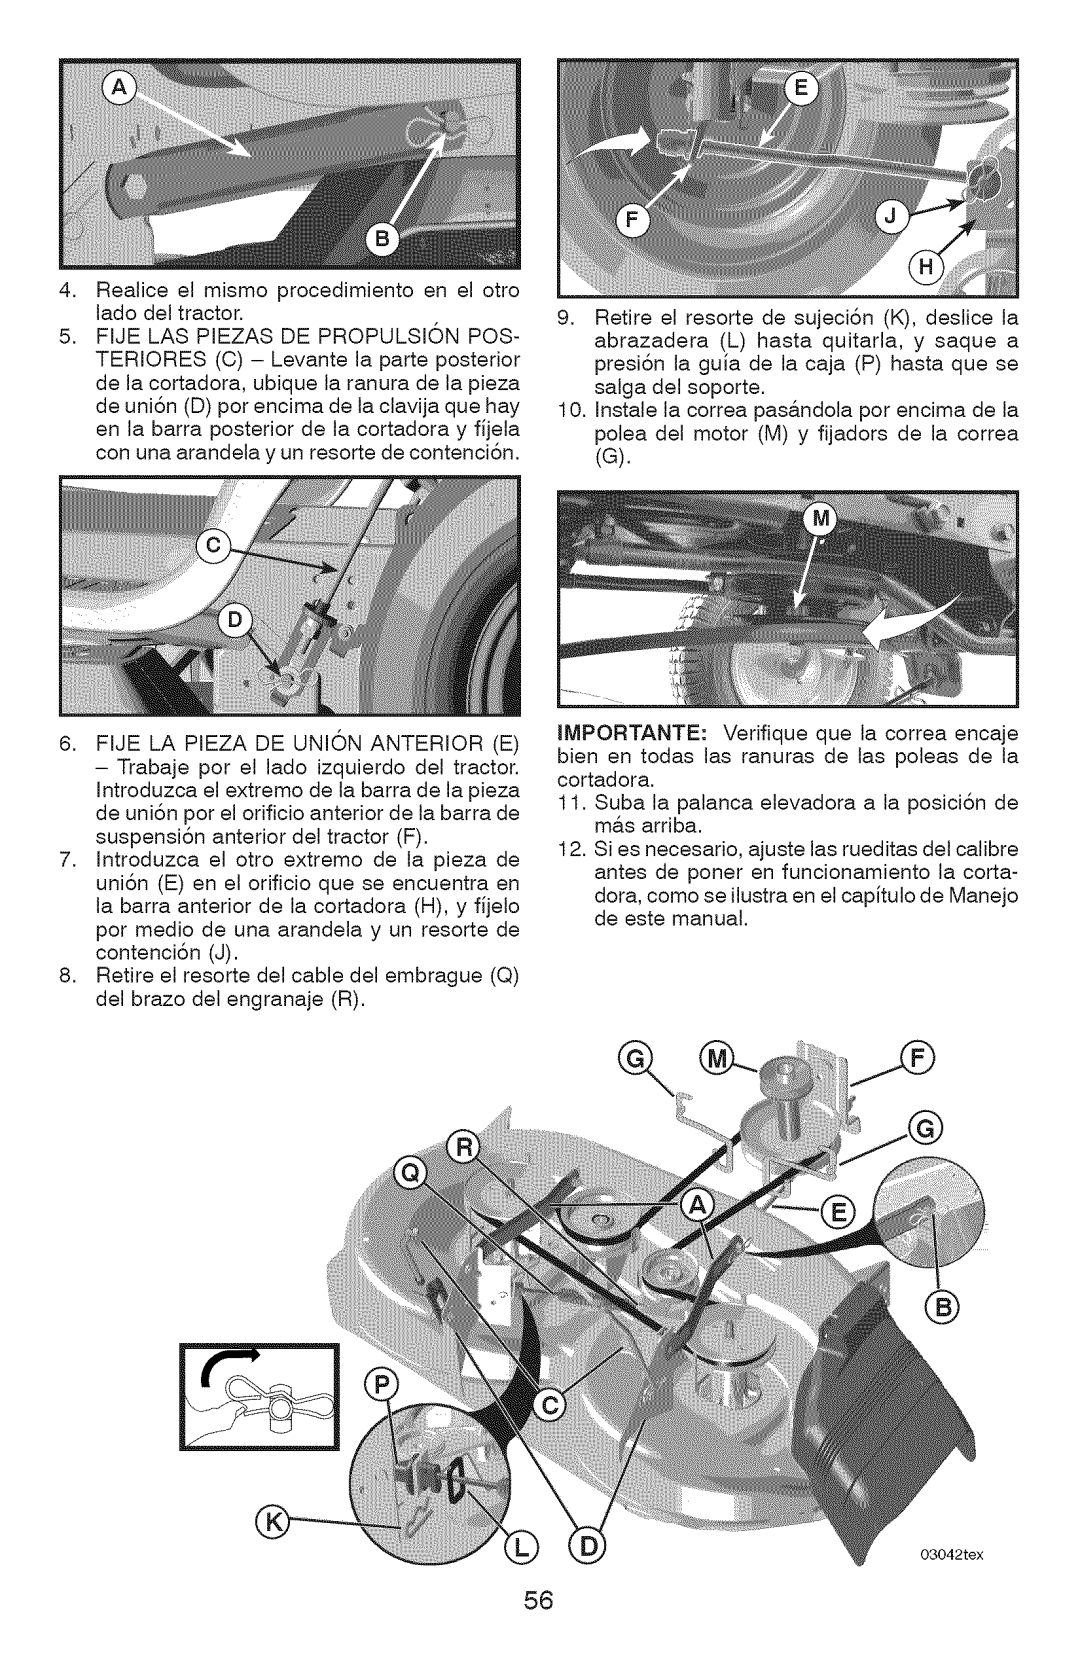 Craftsman 917.28927 manual Realice el mismo procedimiento en el otro lado del tractor 